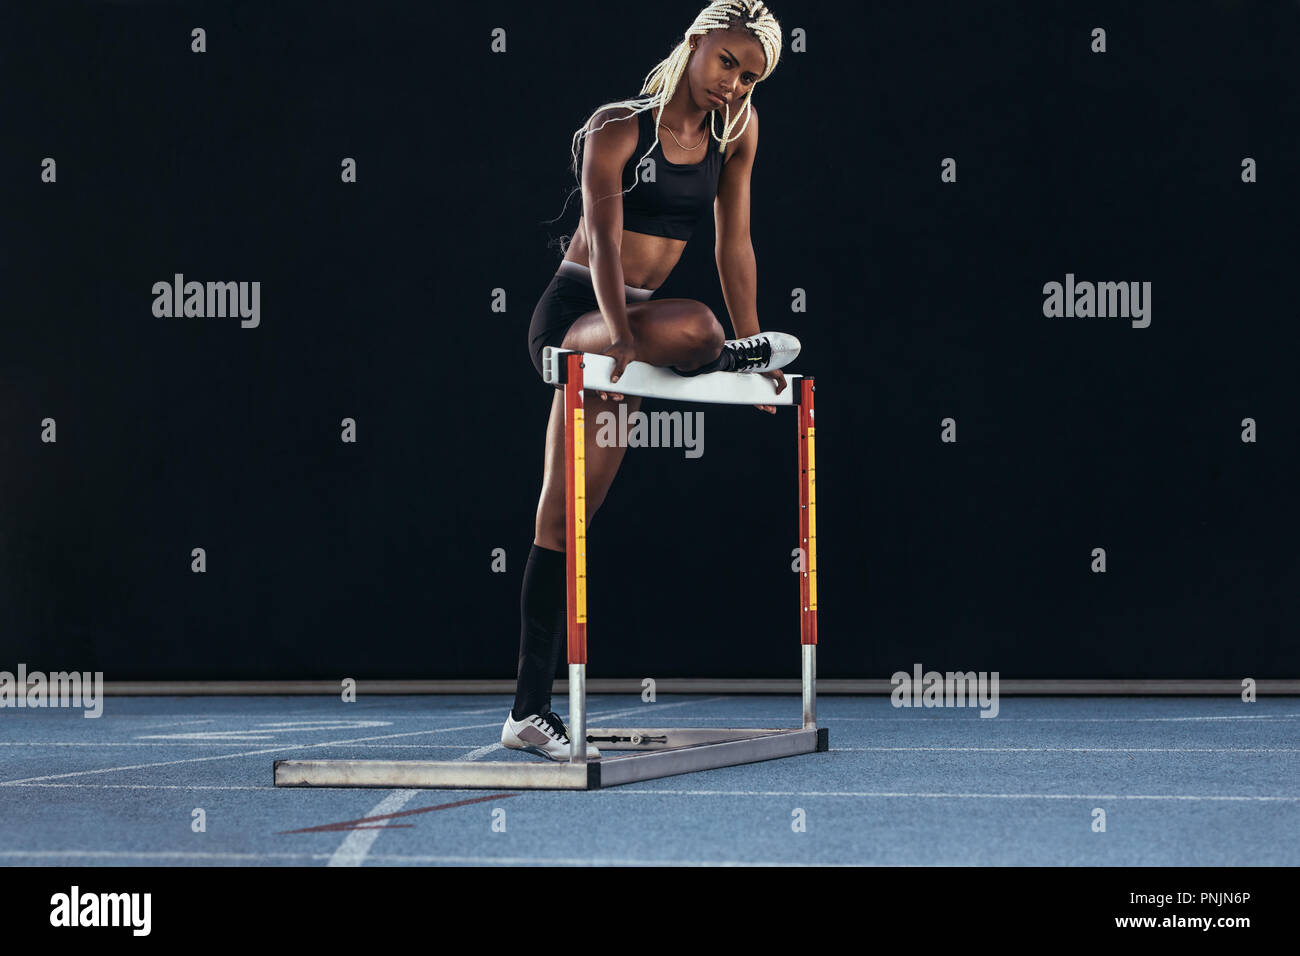 La atleta femenina de pie sobre una pista de atletismo descansando una pierna en un obstáculo. Foto de stock